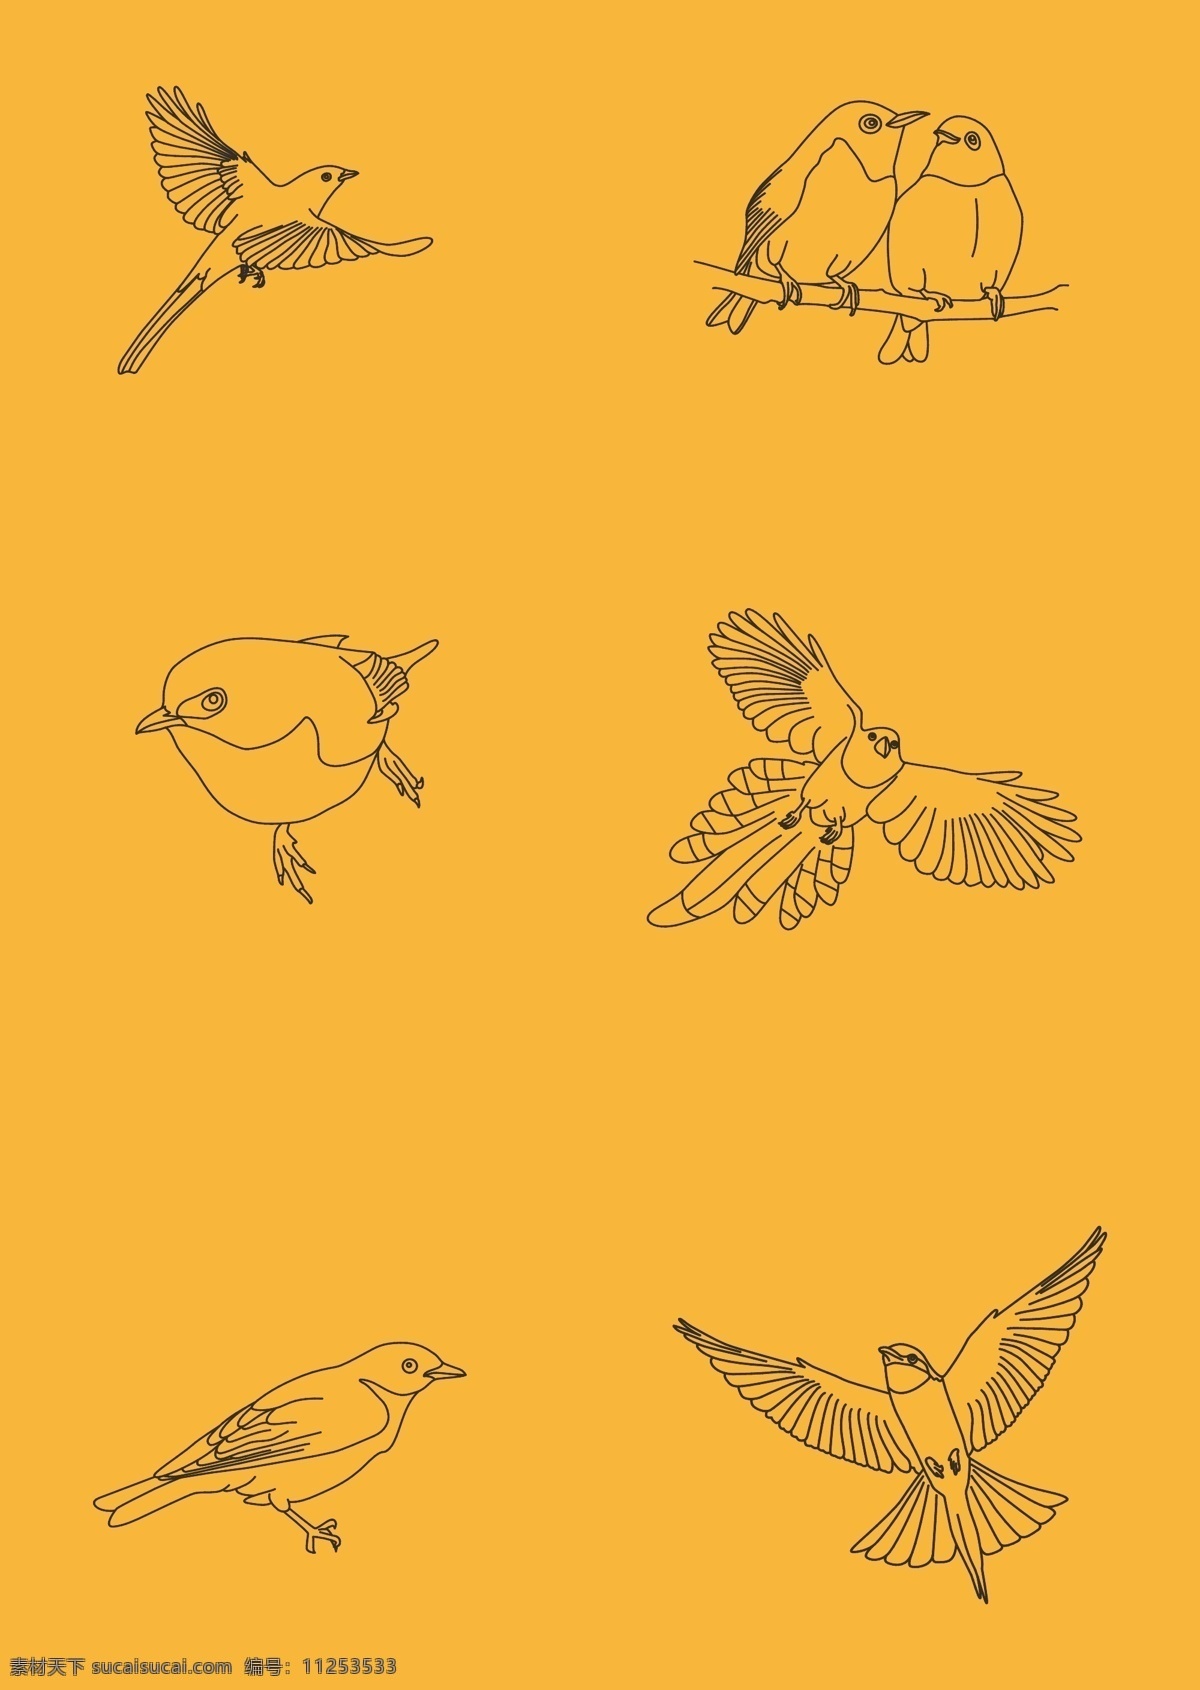 手绘鸟类 鸟 鸟类 飞鸟 鸟类手绘 鸟类素材 鸟类矢量图 鸟类简笔画